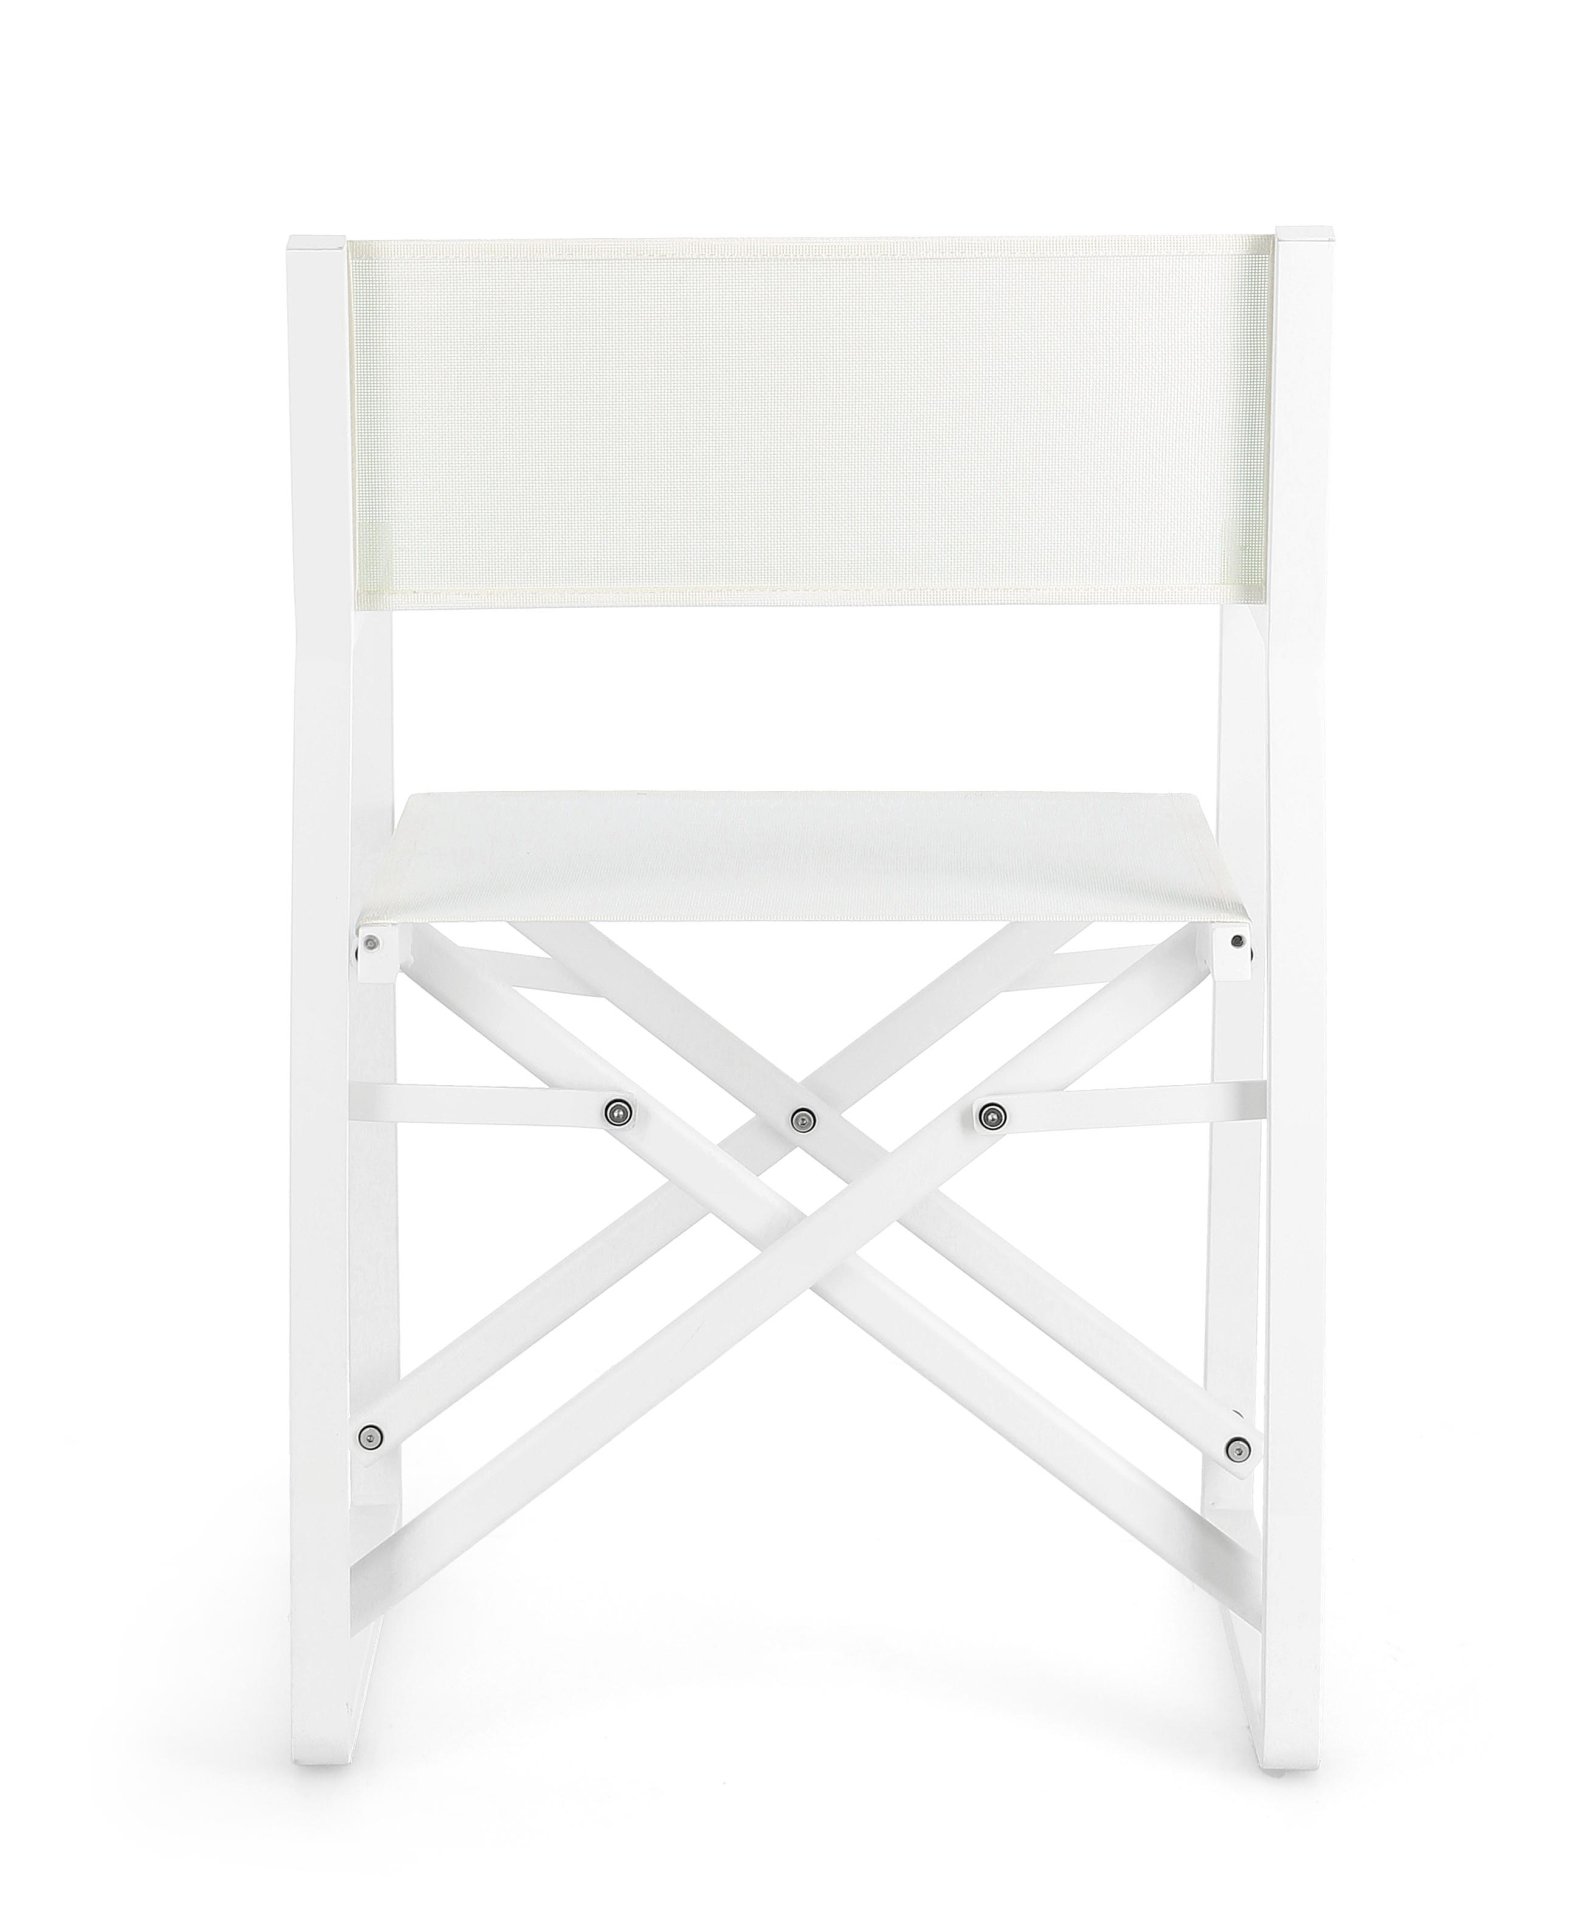 Der Gartenstuhl Konnor überzeugt mit seinem modernen Design. Gefertigt wurde er aus Textilene, welche einen weißen Farbton besitzt. Das Gestell ist aus Aluminium und hat auch eine weiße Farbe. Der Stuhl verfügt über eine Sitzhöhe von 46 cm und ist für den